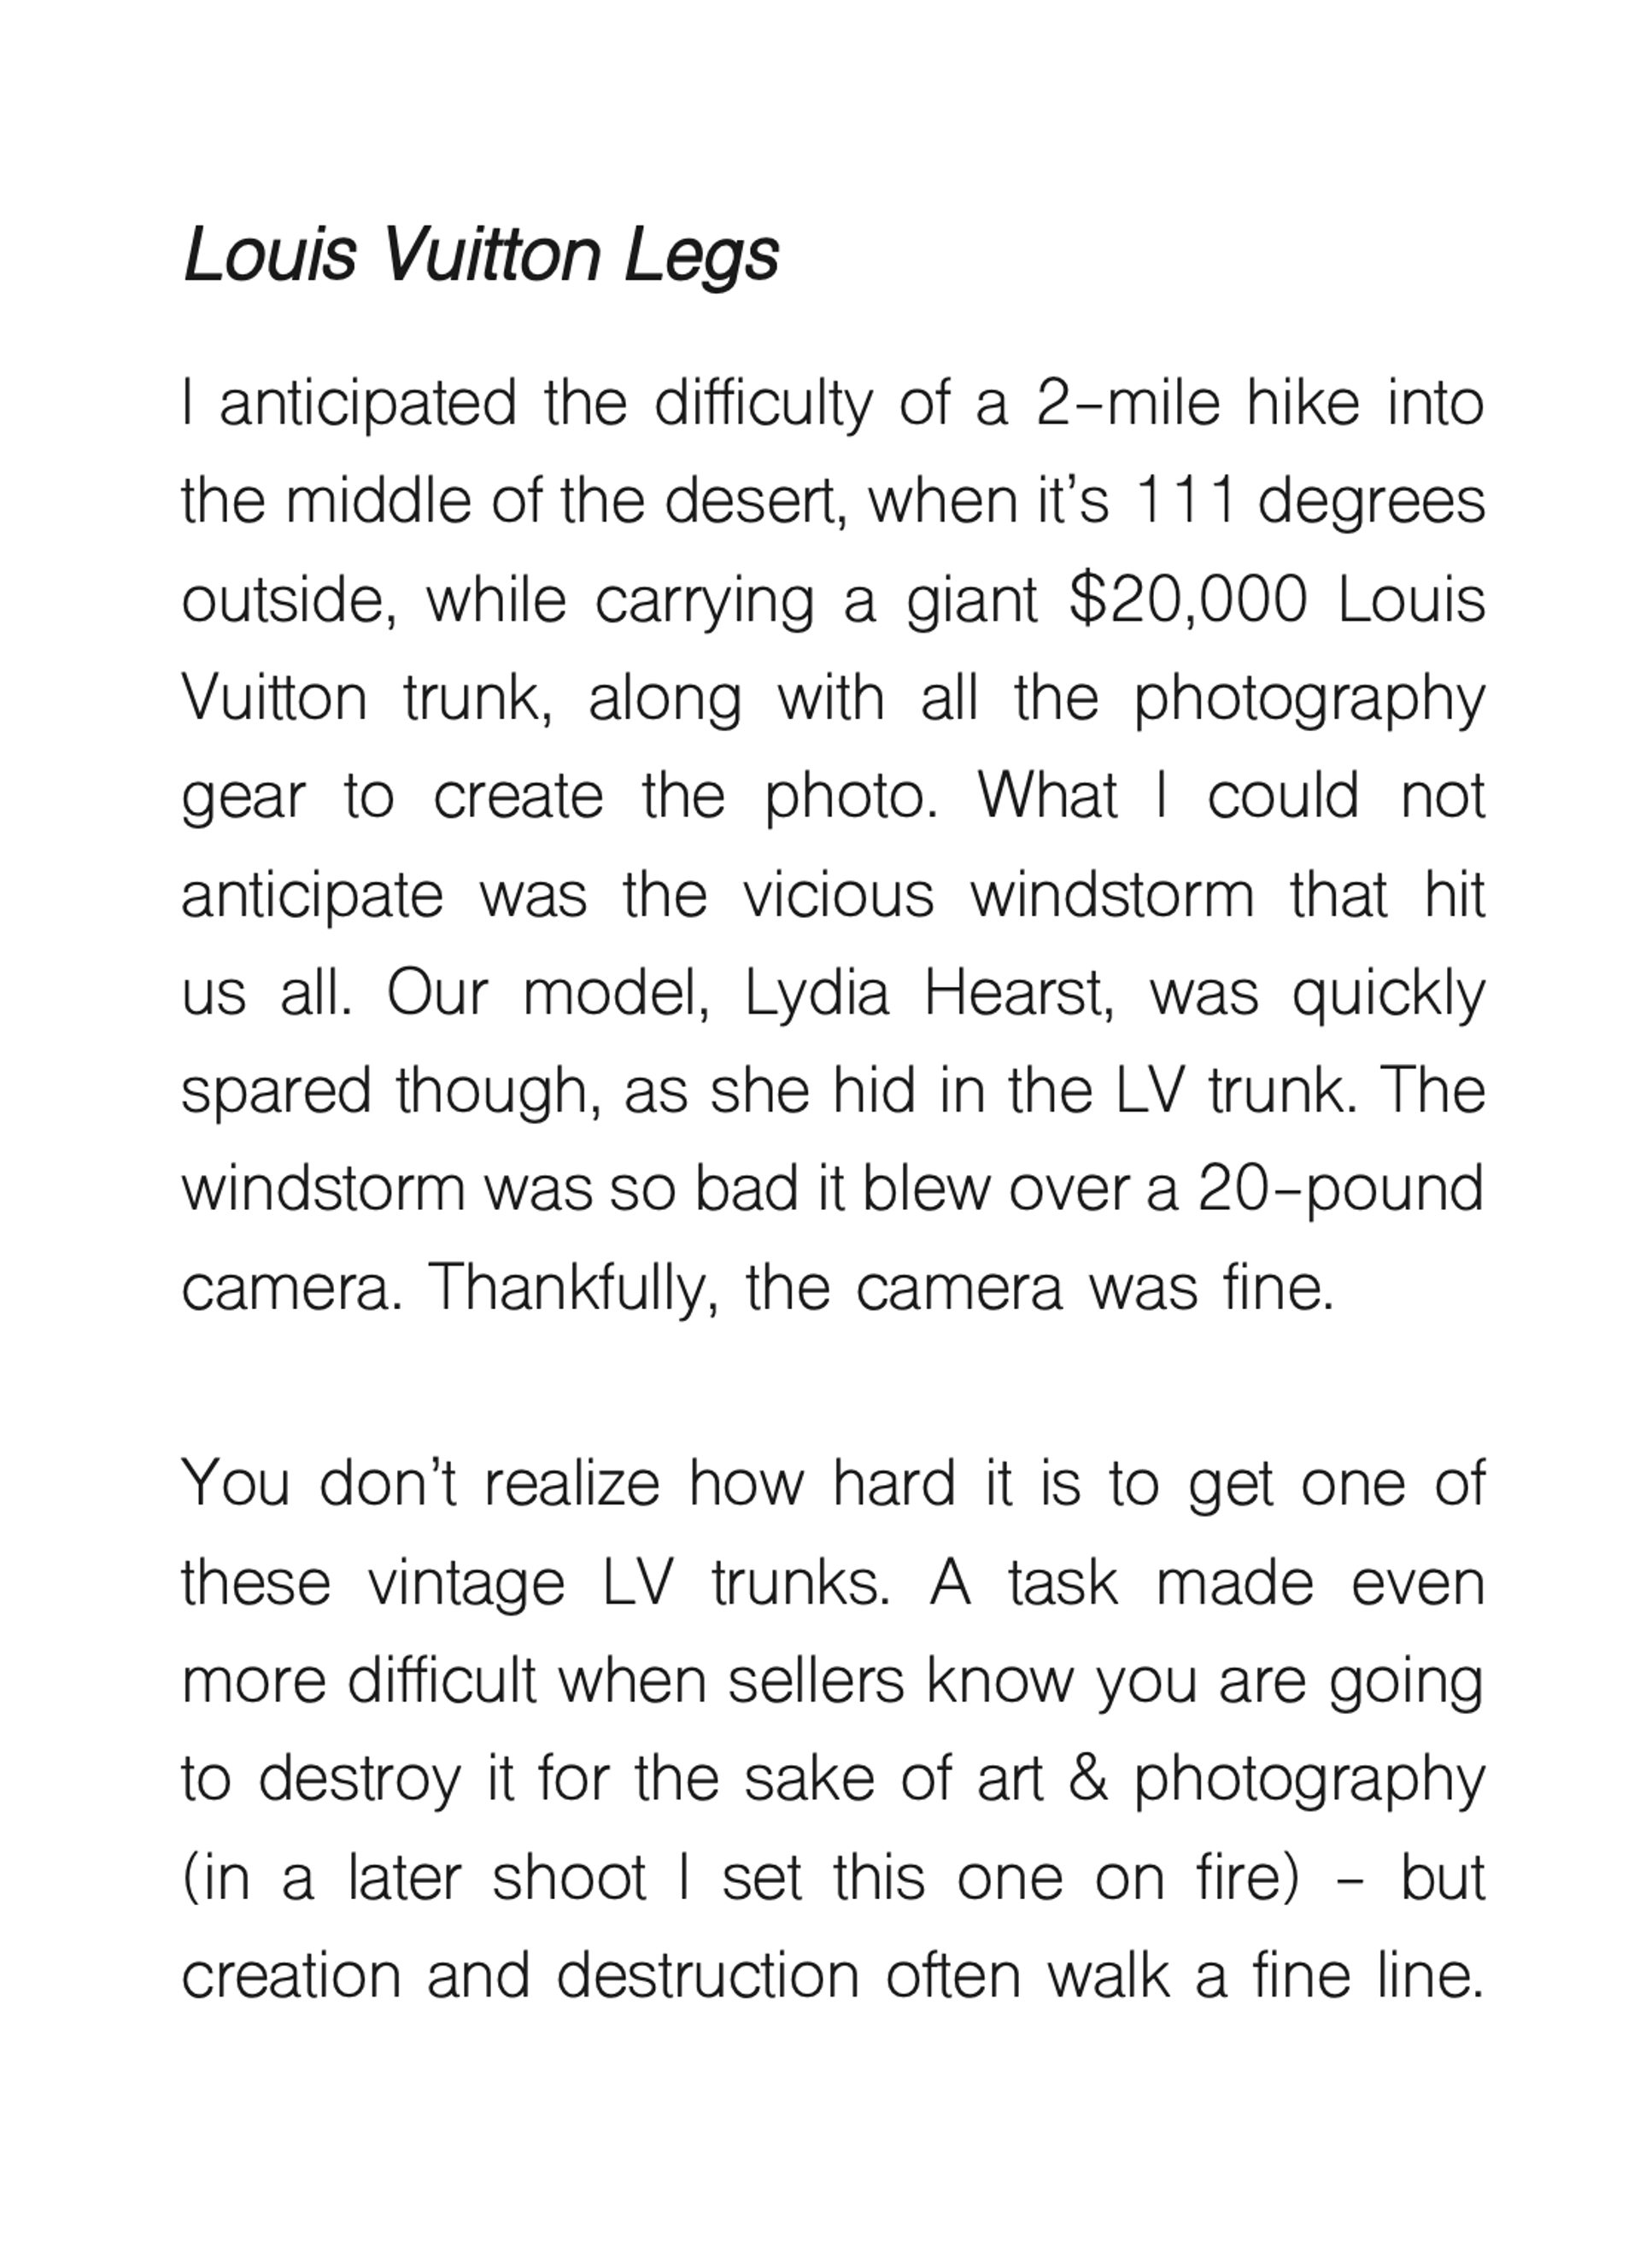 Louis Vuitton Legs by Tyler Shields